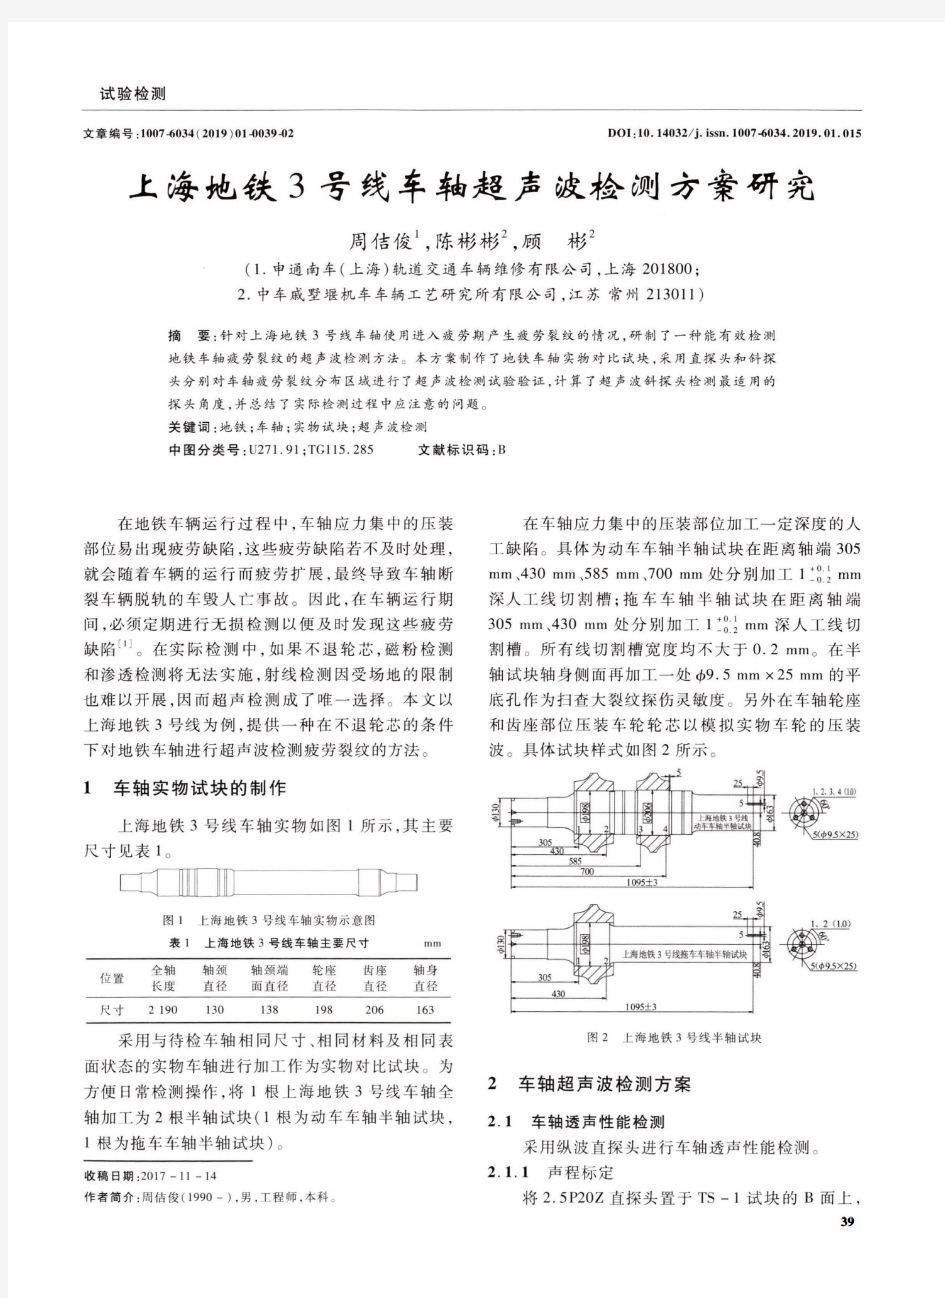 上海地铁3号线车轴超声波检测方案研究